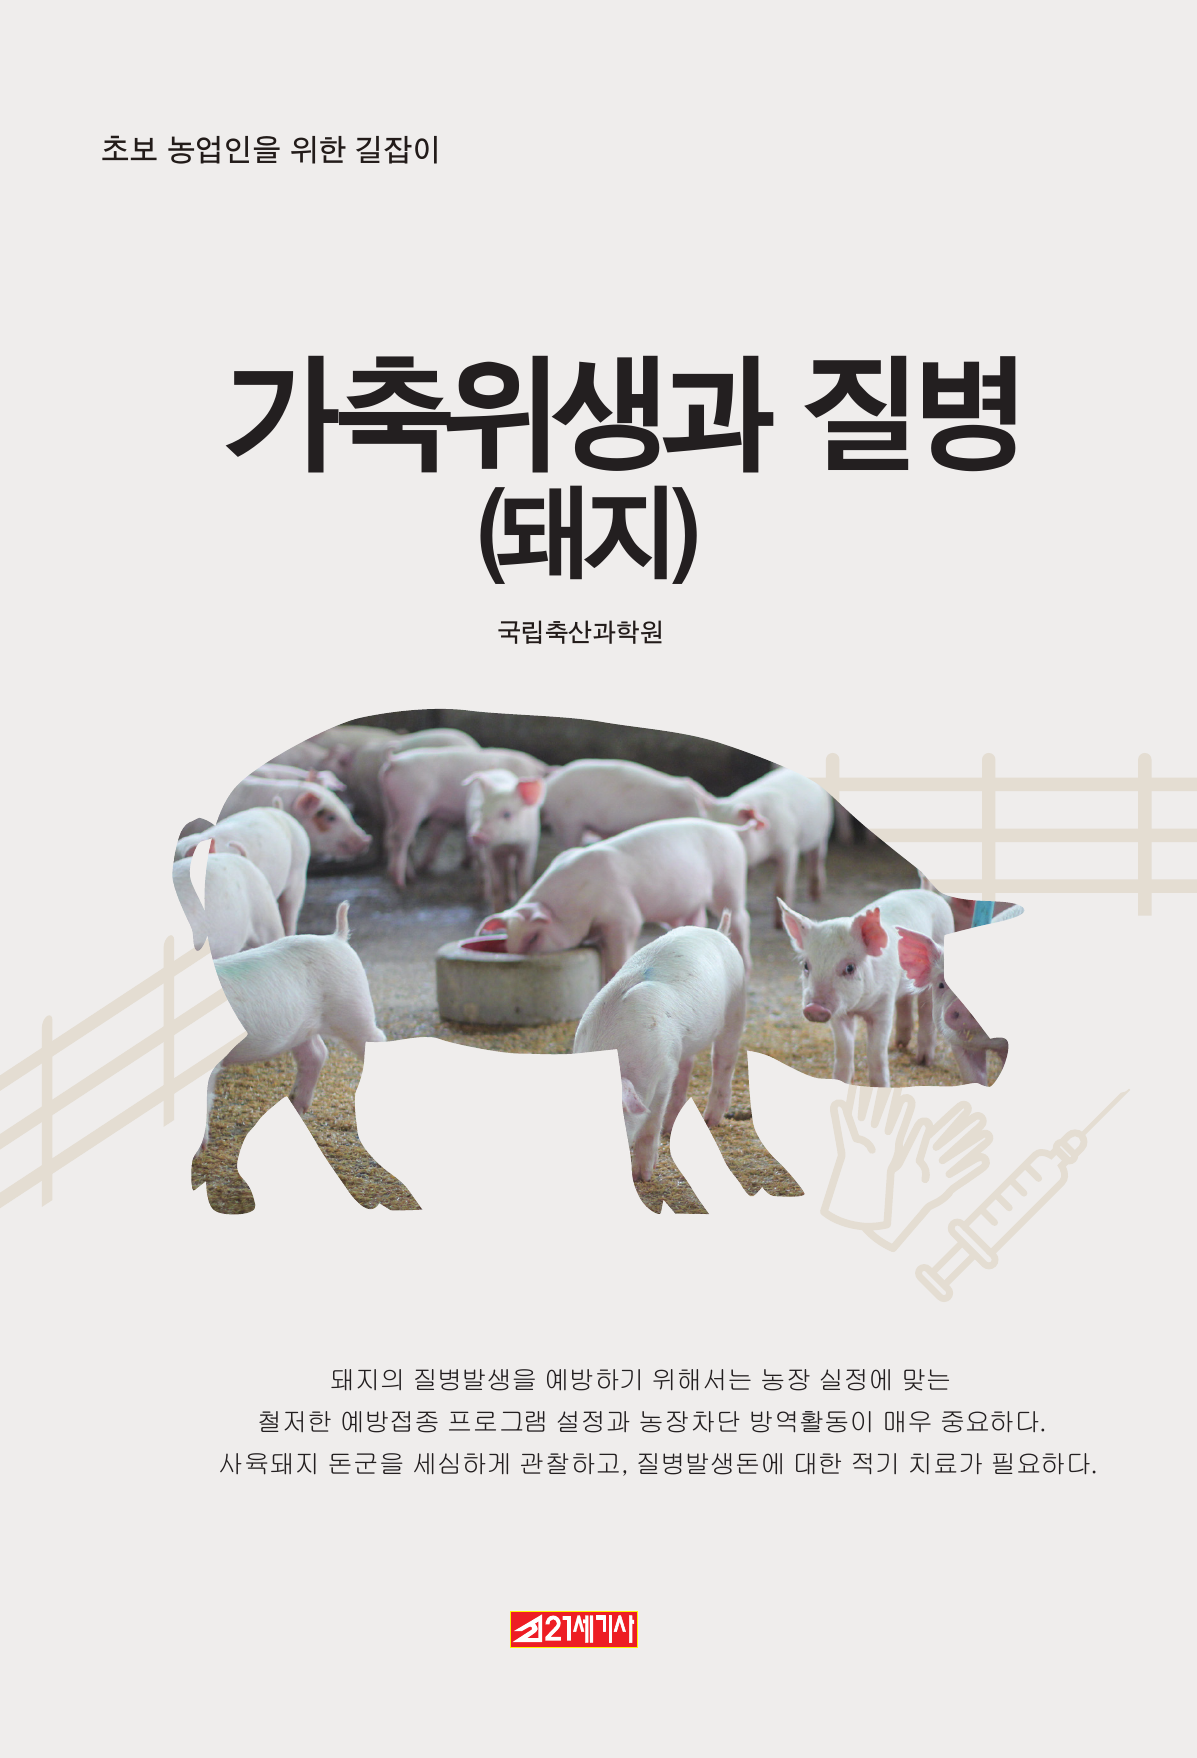 (초보 농업인을 위한 길잡이) 가축위생과 질병-돼지